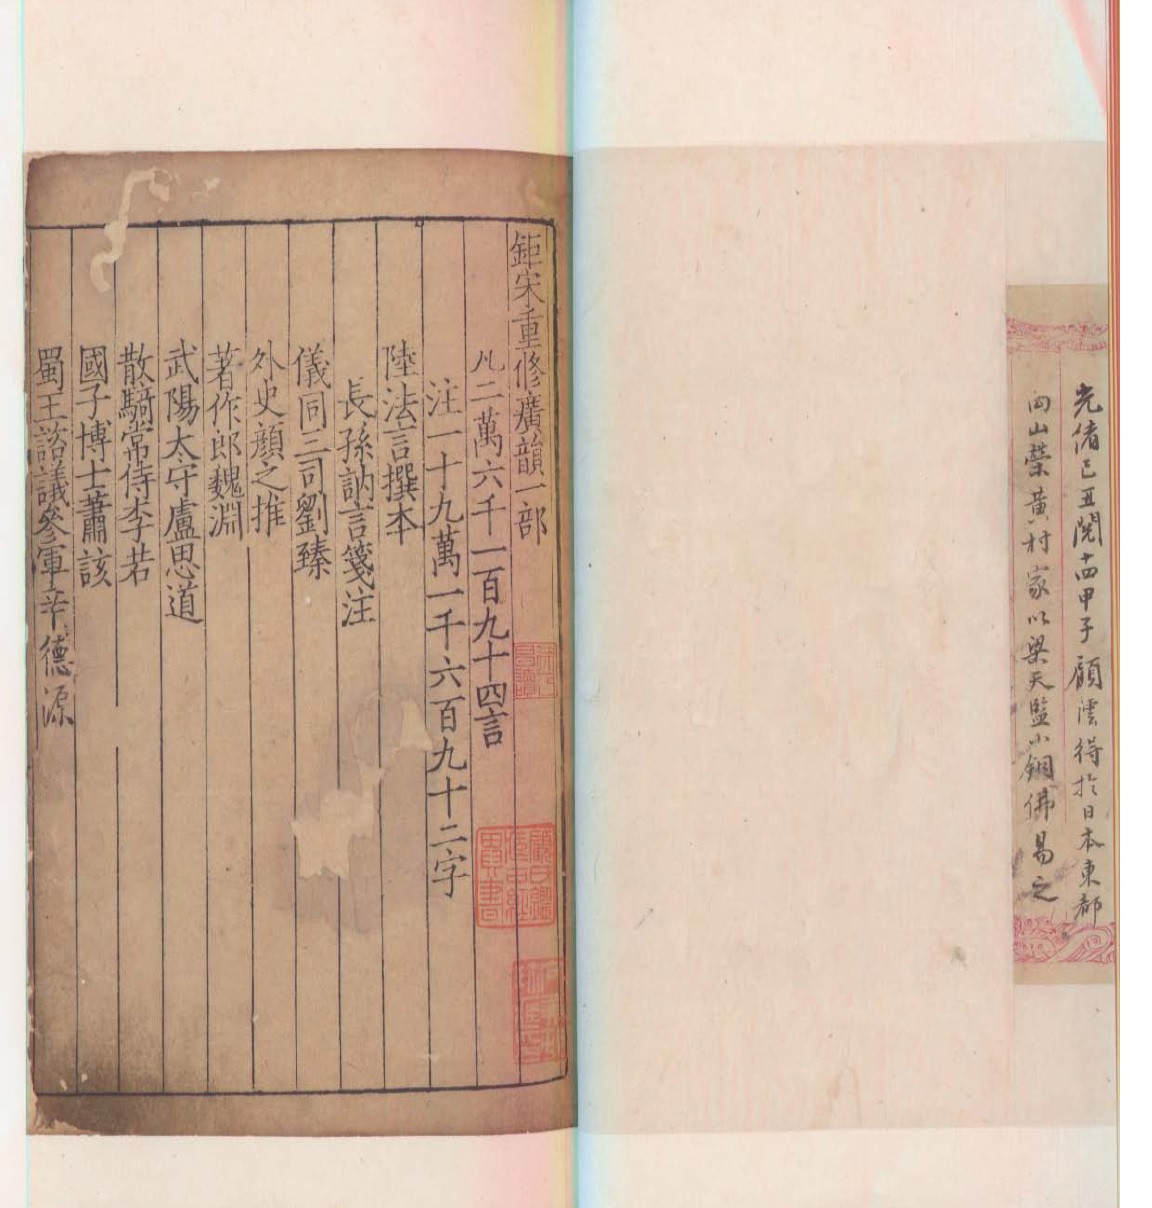 《钜宋广韵》曾流入日本，后为顾澐够归，现藏上海图书馆。图片由上海图书馆提供。.jpg